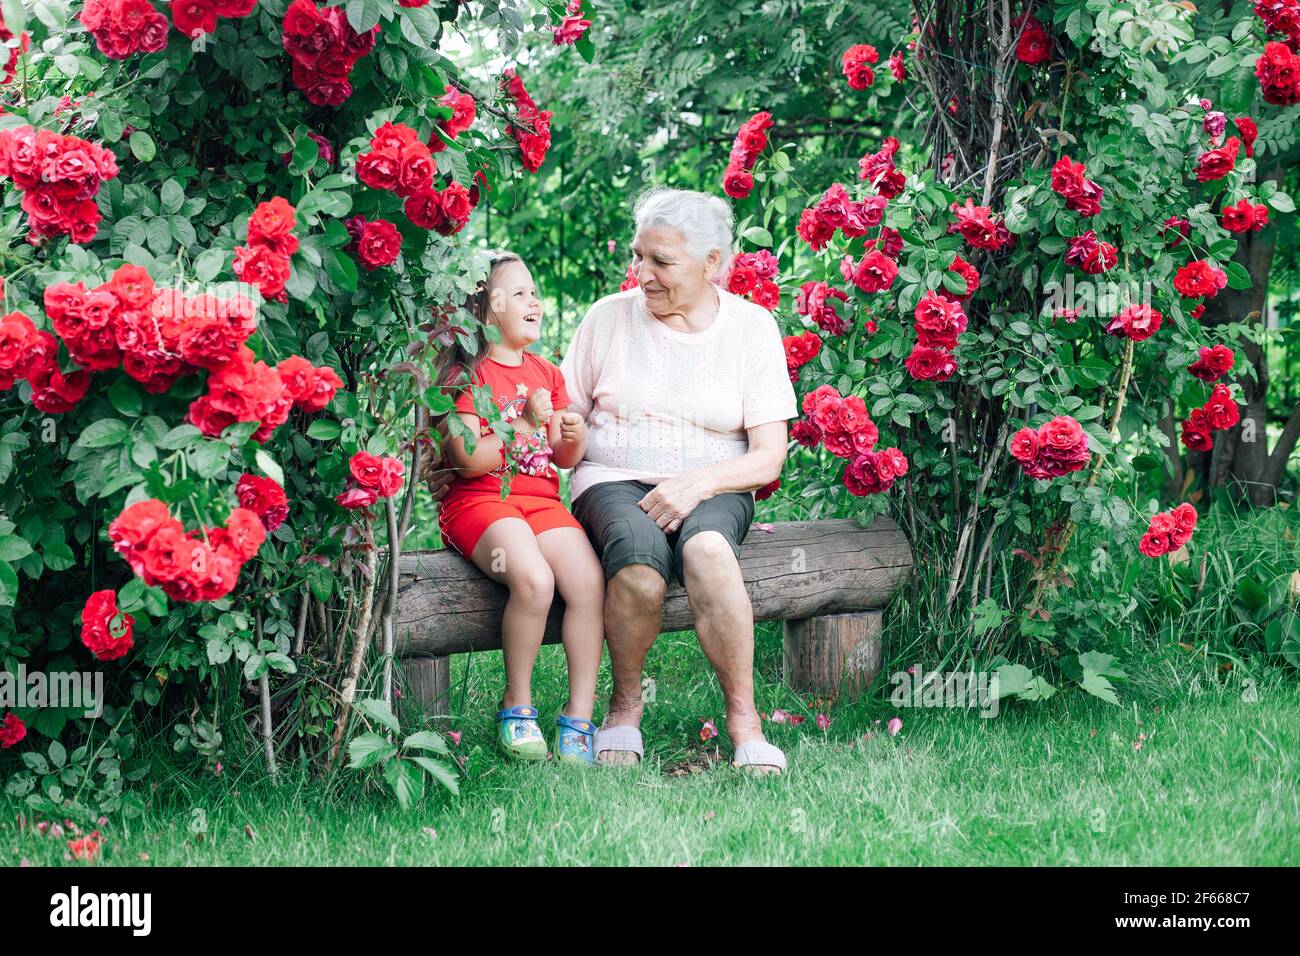 una vecchia nonna racconta alla ragazza storie divertenti da lei infanzia seduta su una panchina fatta di tronchi nel giardino sotto un arco di rose Foto Stock